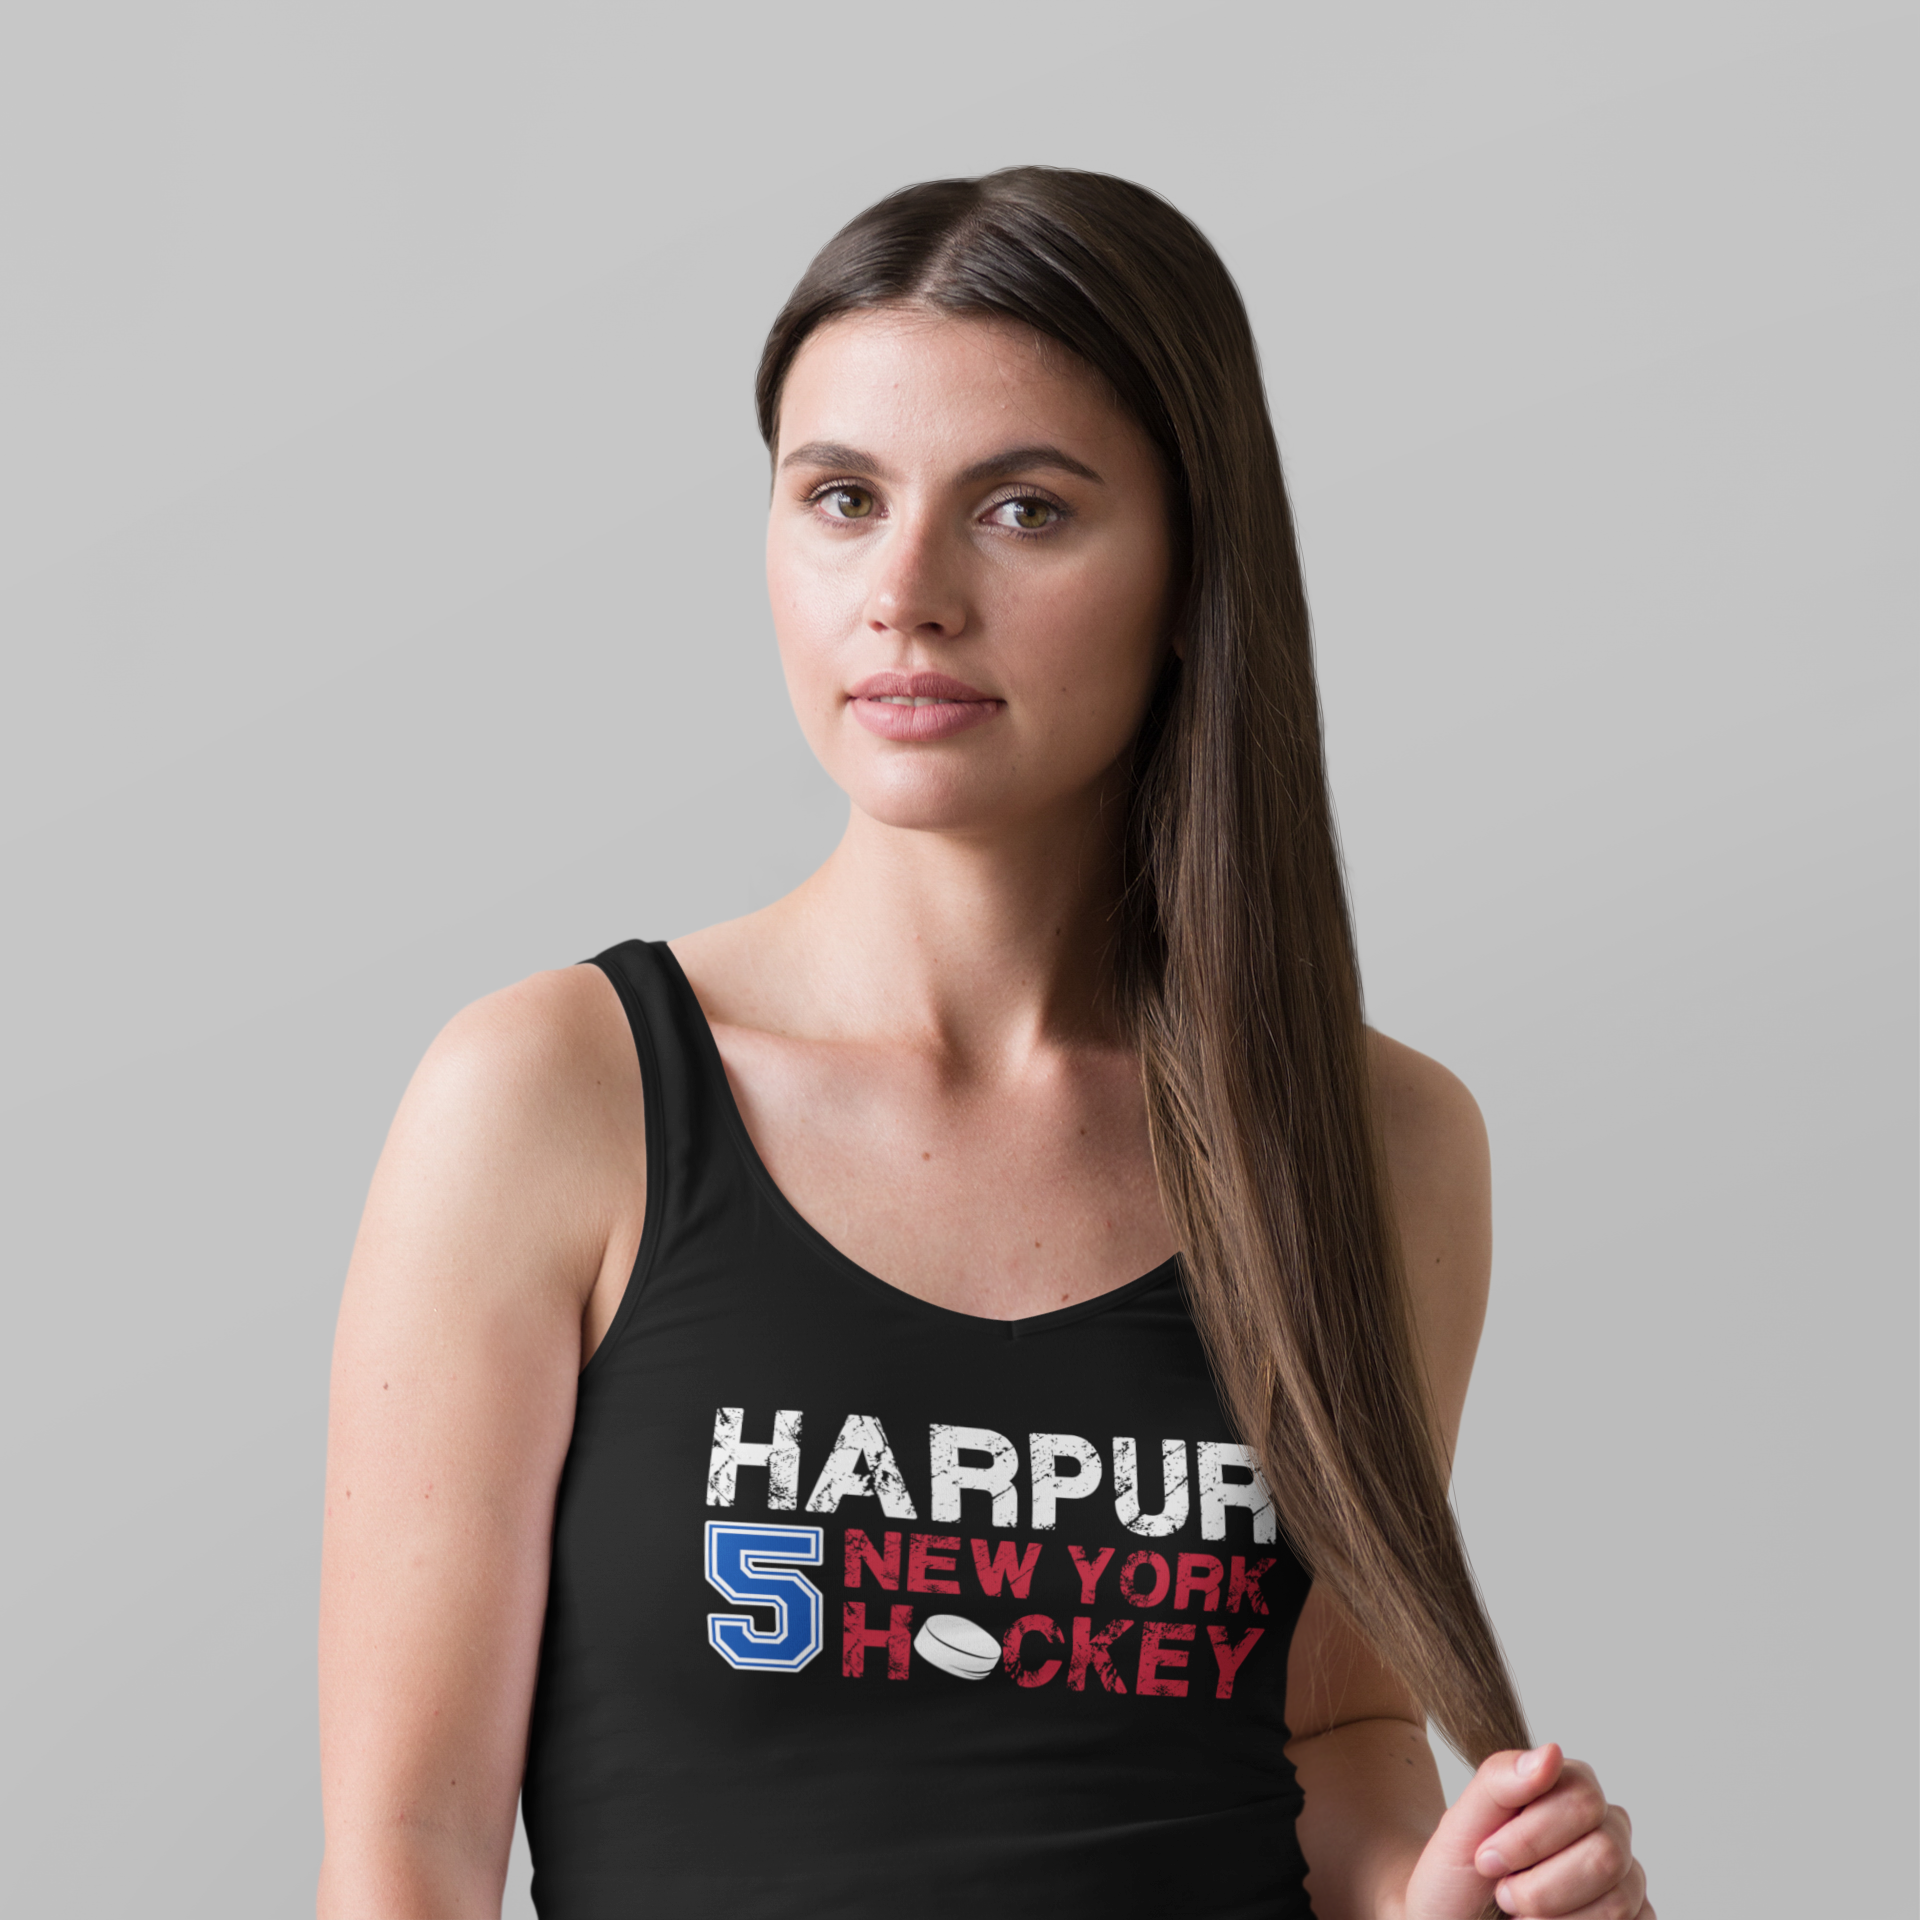 Harpur 5 New York Hockey Women's Tri-Blend Racerback Tank Top